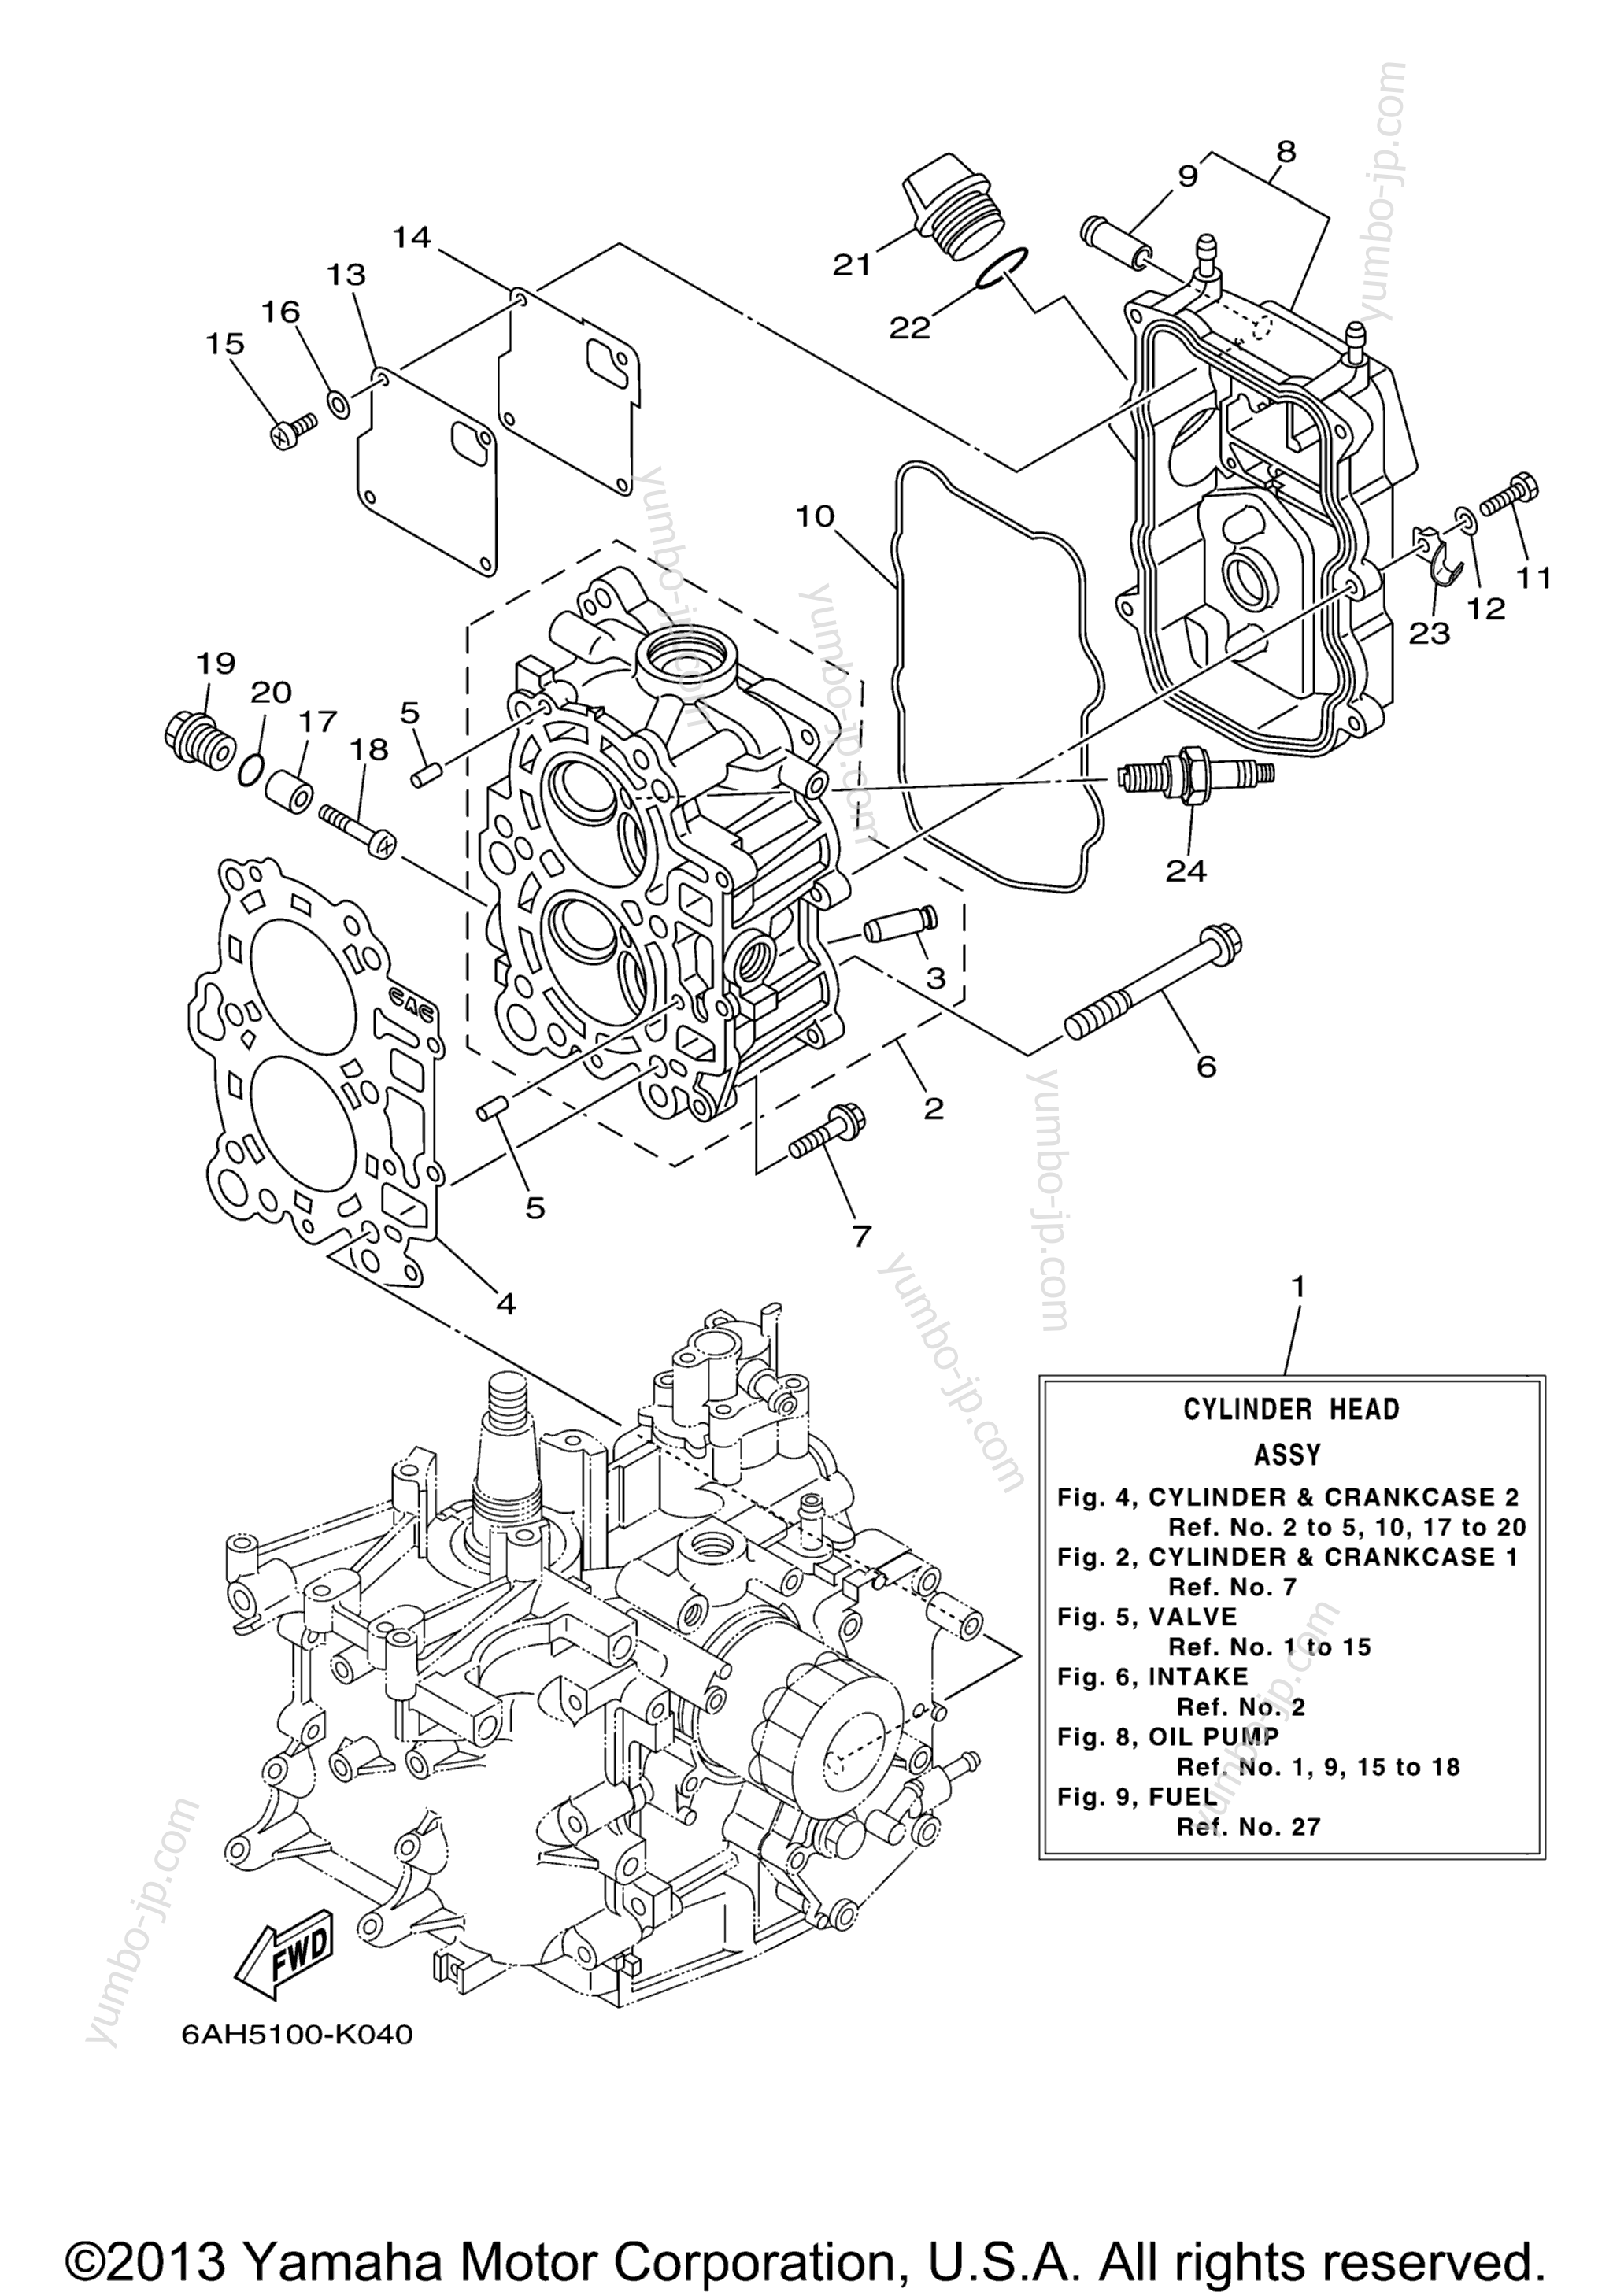 Cylinder Crankcase 2 для лодочных моторов YAMAHA F20LPHA_04 (0411) 2006 г.